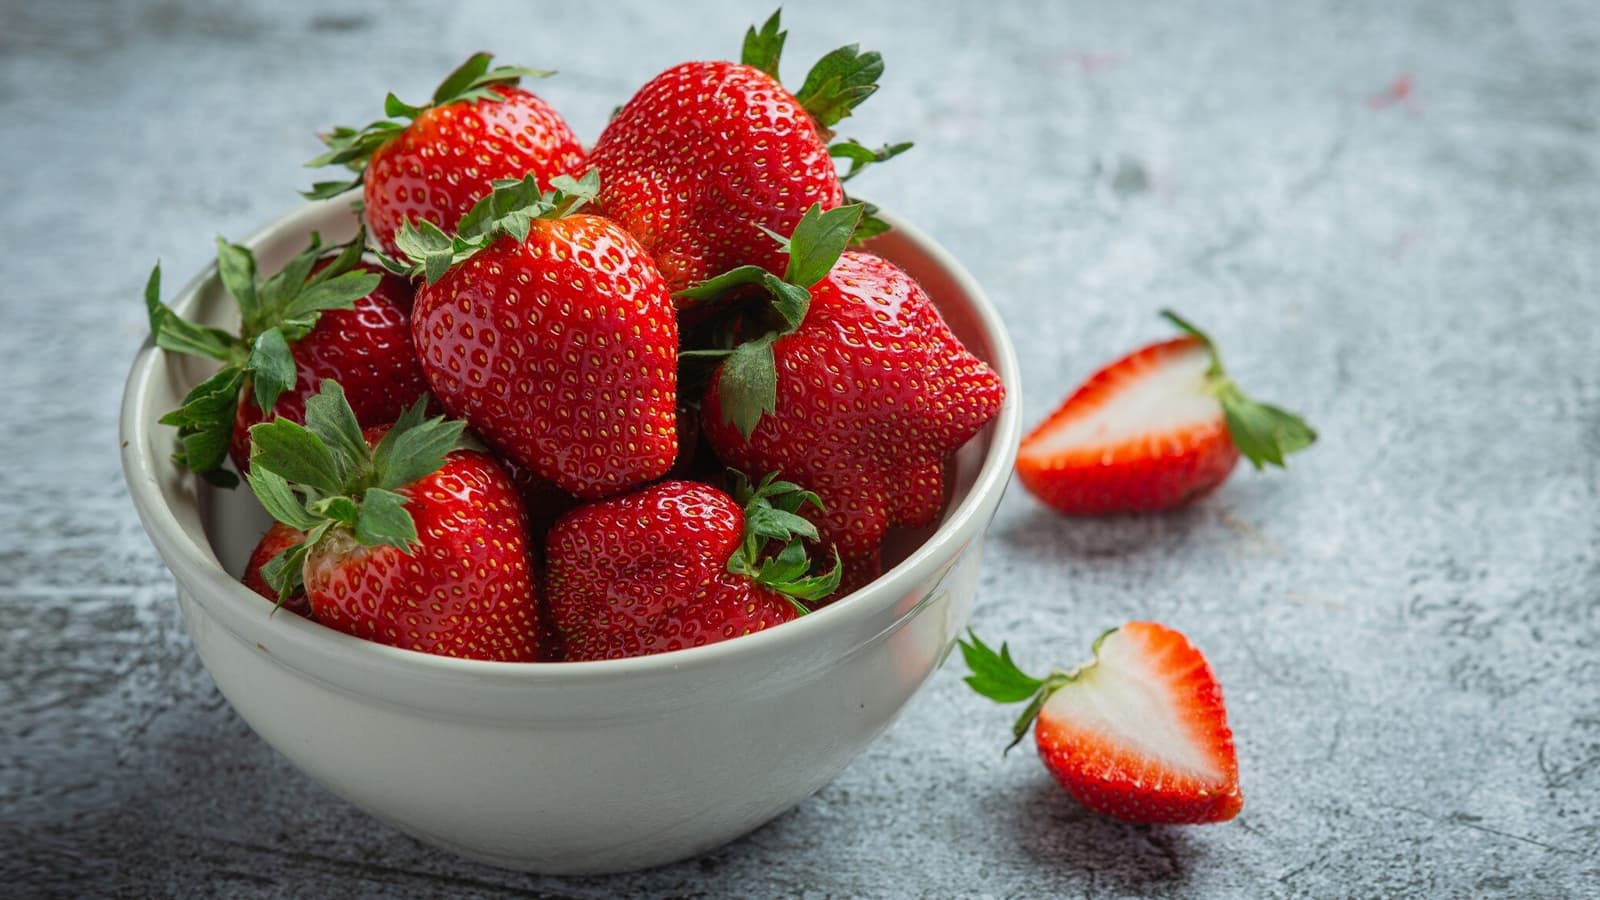 Wie gesund sind Erdbeeren? Bild von einer Schüssel, die prall gefüllt mit Erdbeeren ist.